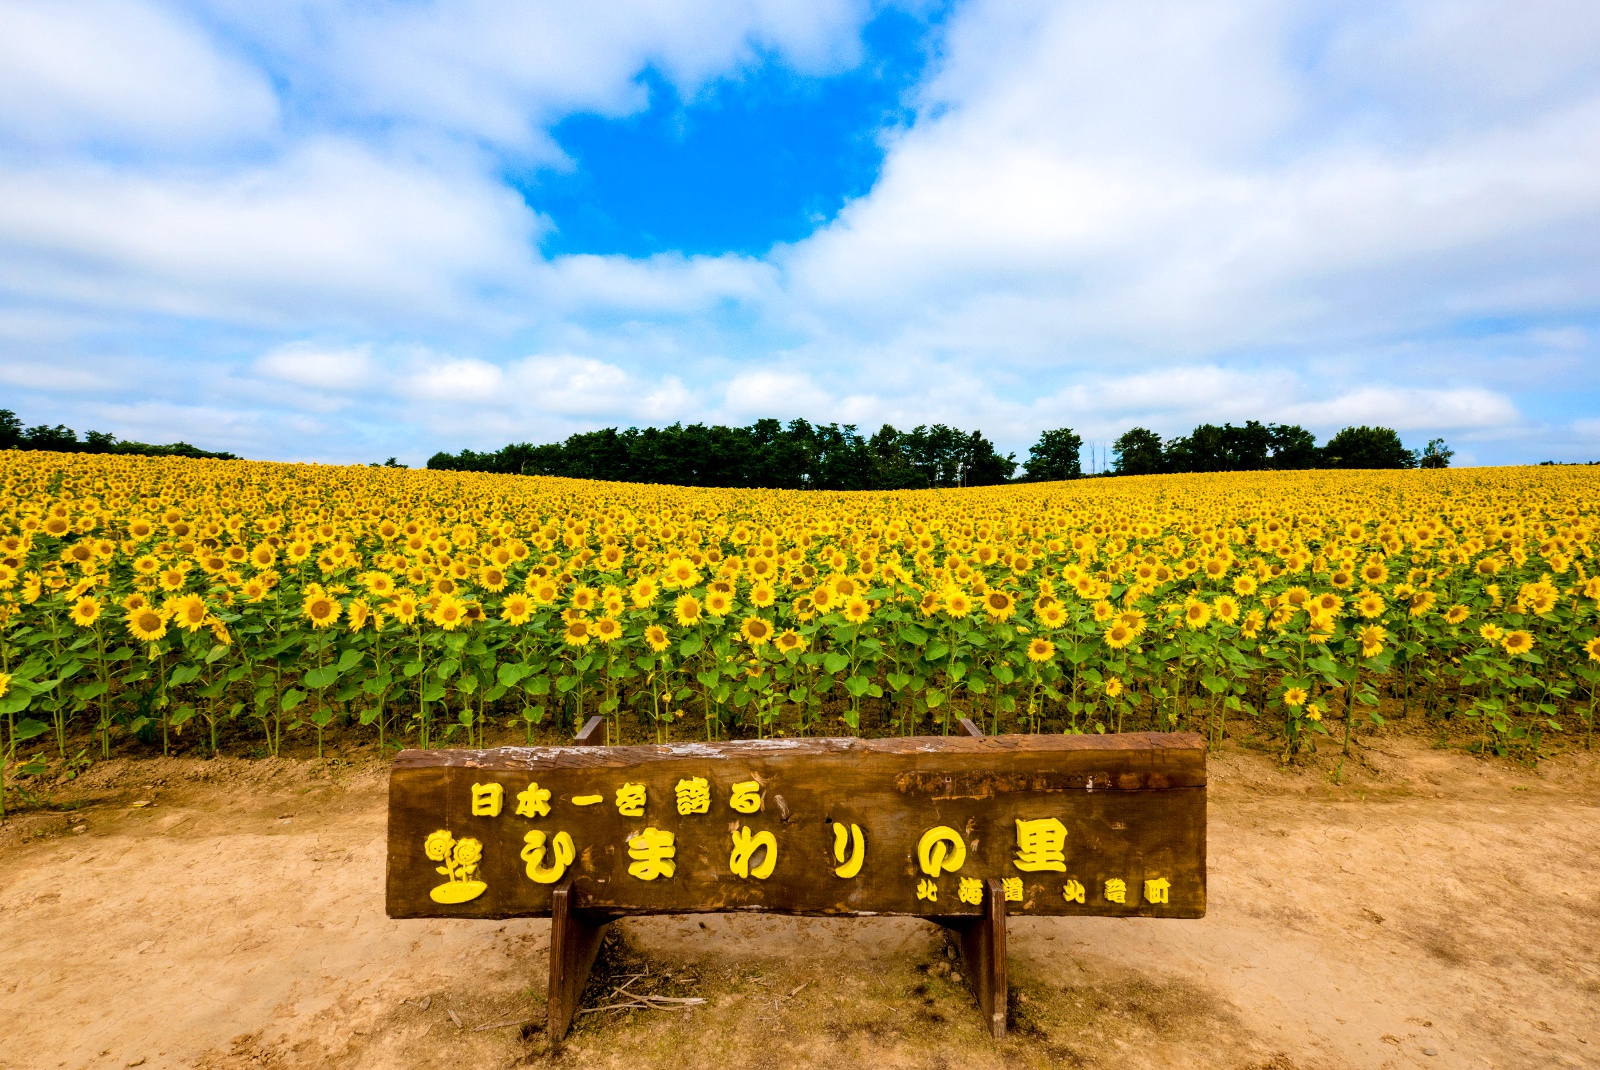 一面黄色の丘で夏を実感!! 国内最大級のヒマワリ畑「ひまわりの里」